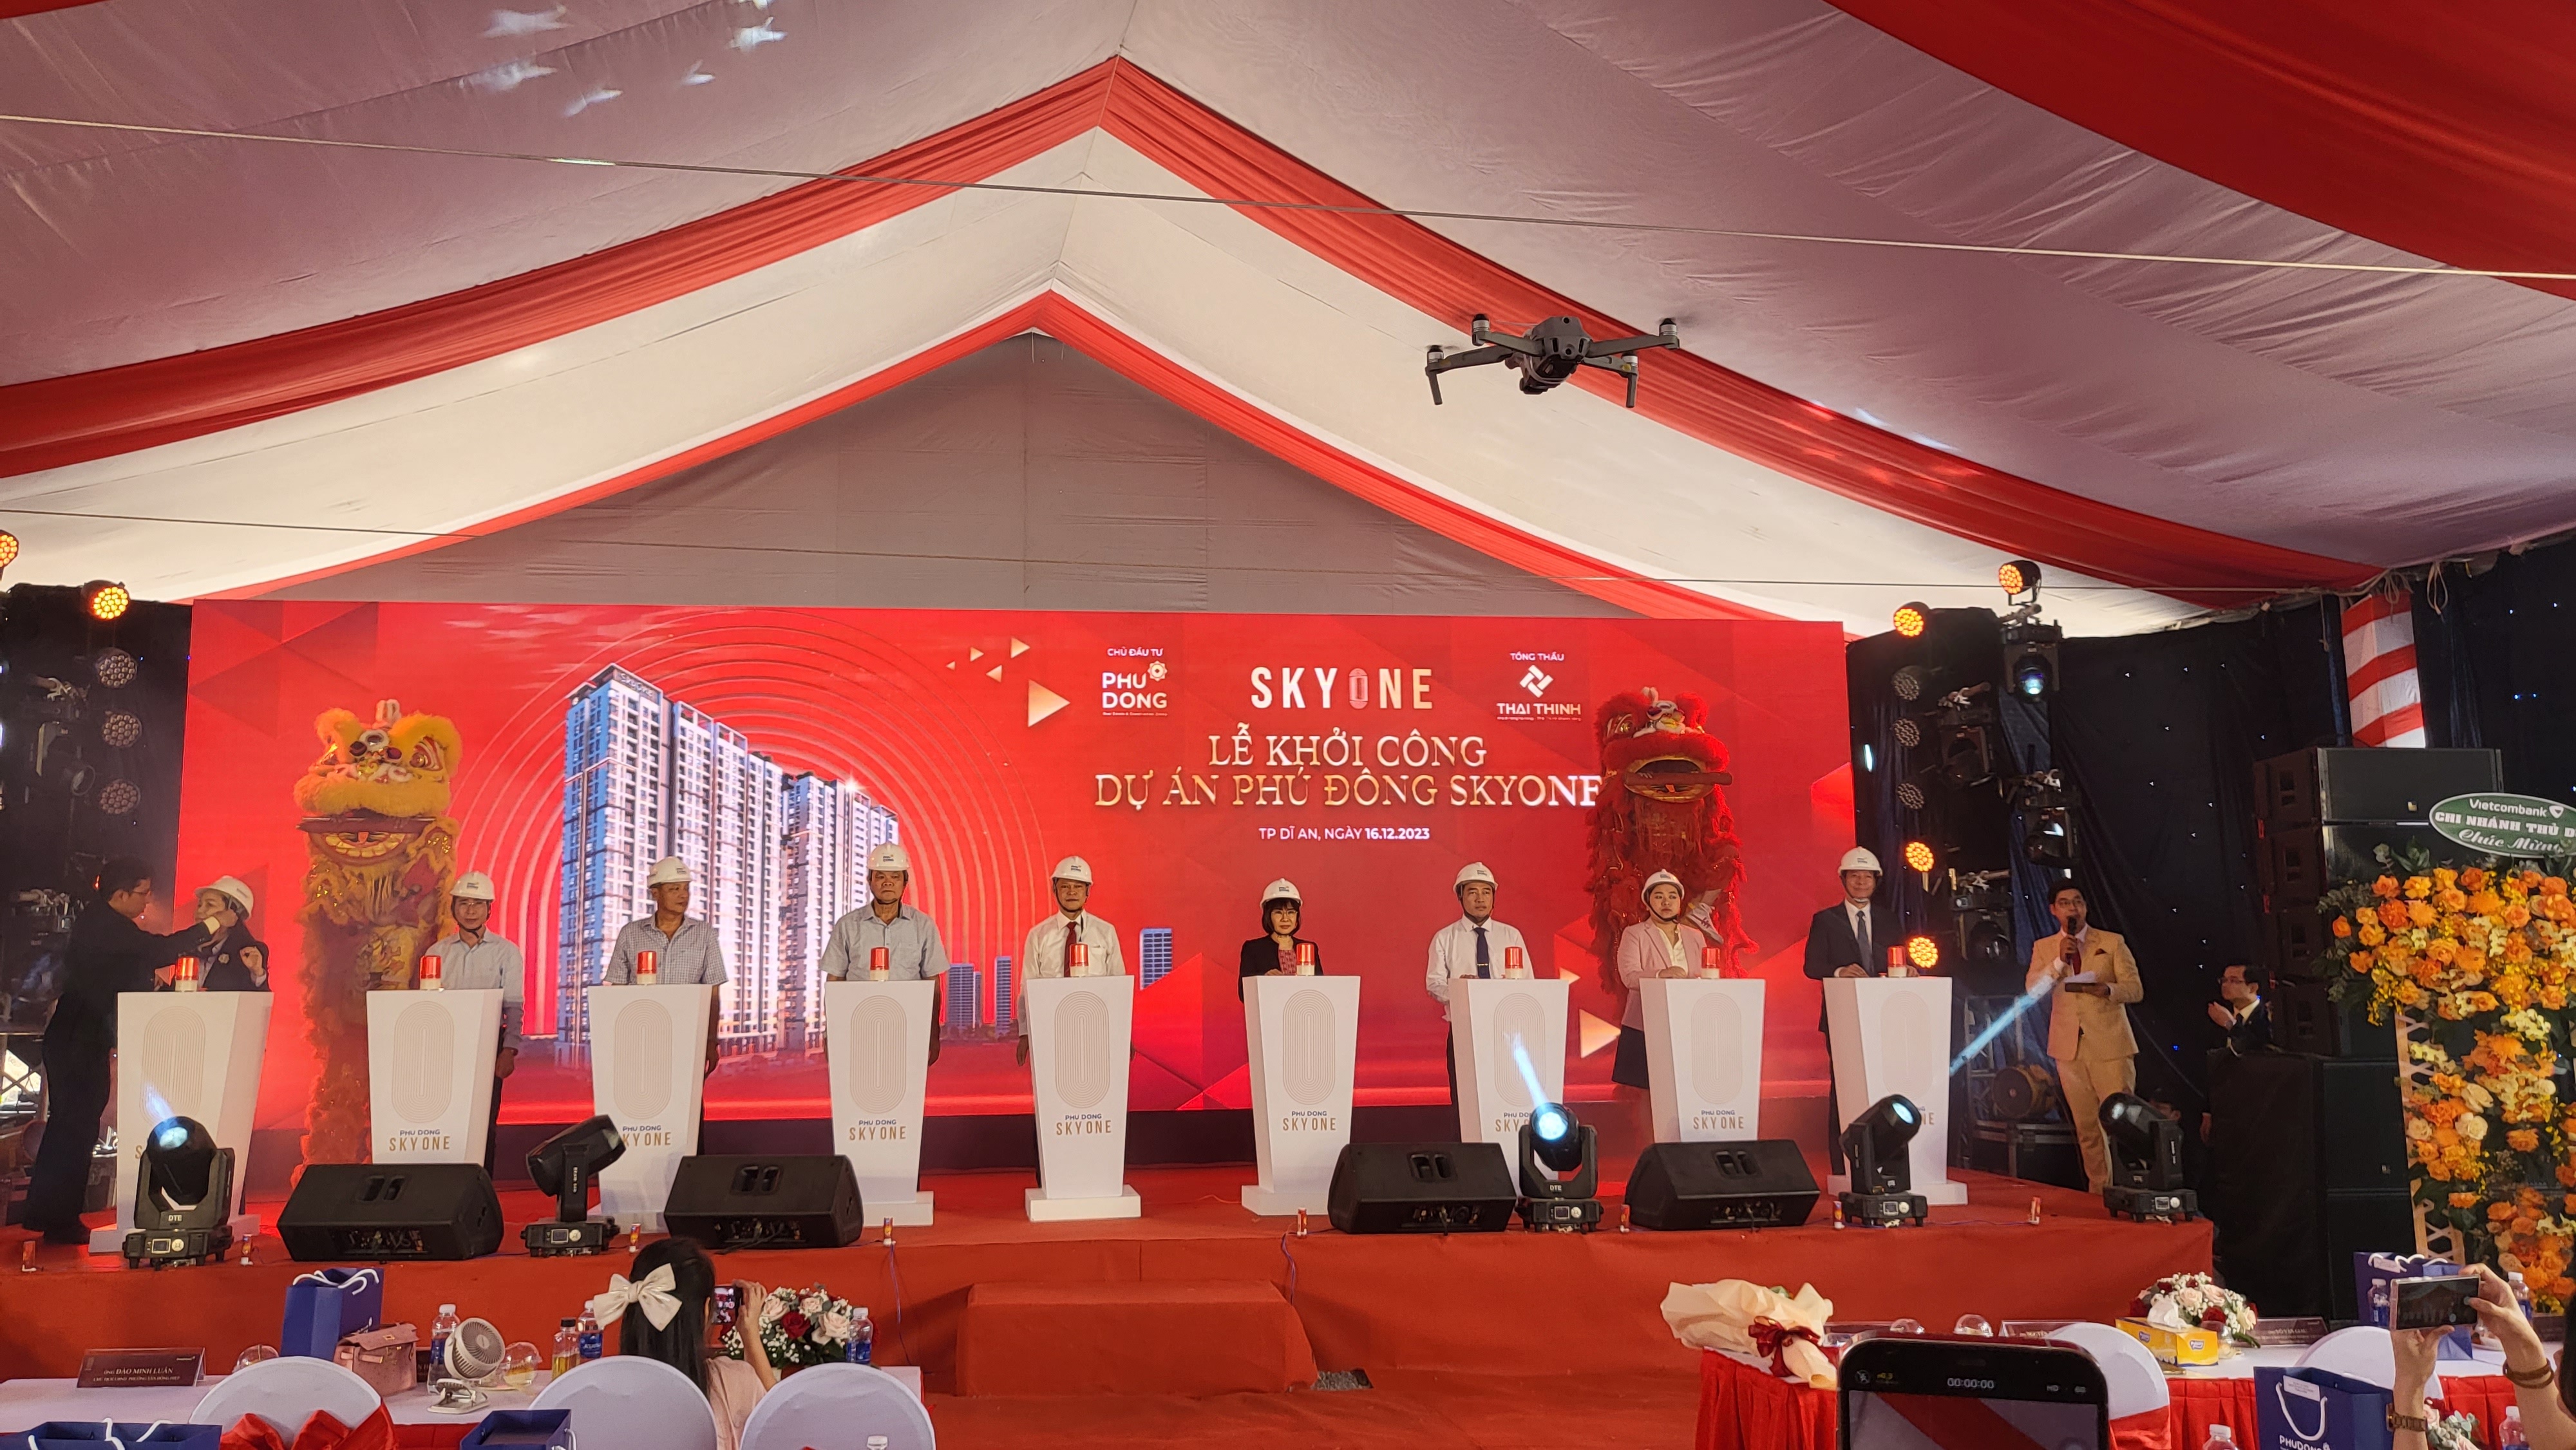 Phú Đông SkyOne chỉ từ 1,2 tỷ đồng, đáp ứng nhu cầu ở thực của người dân